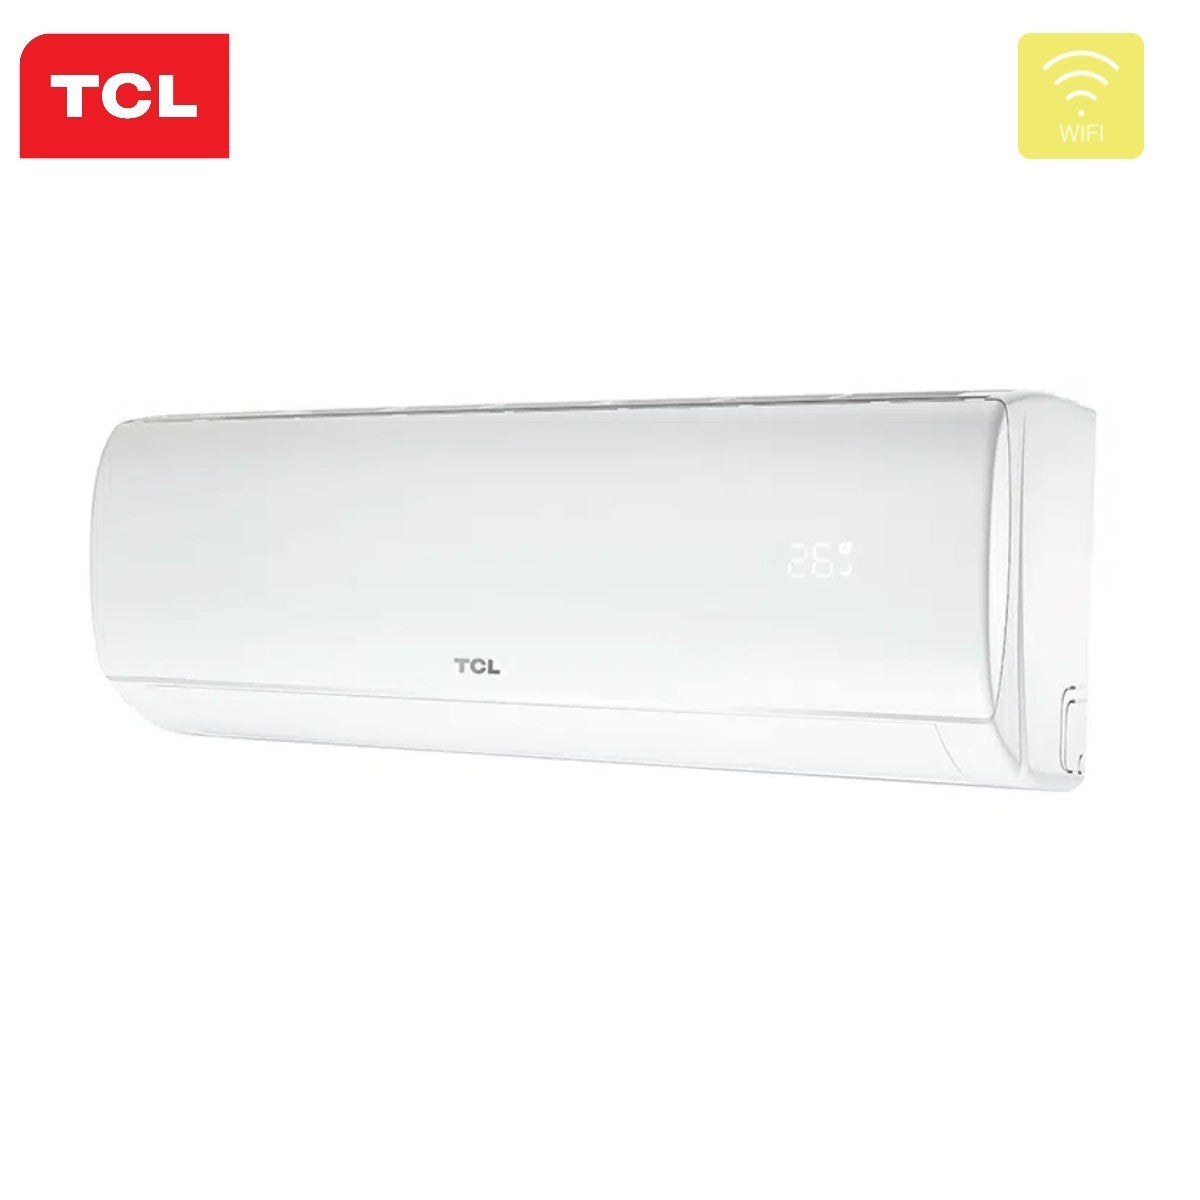 immagine-7-tcl-climatizzatore-condizionatore-tcl-dual-split-inverter-serie-elite-99-con-mt1820-r-32-wi-fi-integrato-90009000